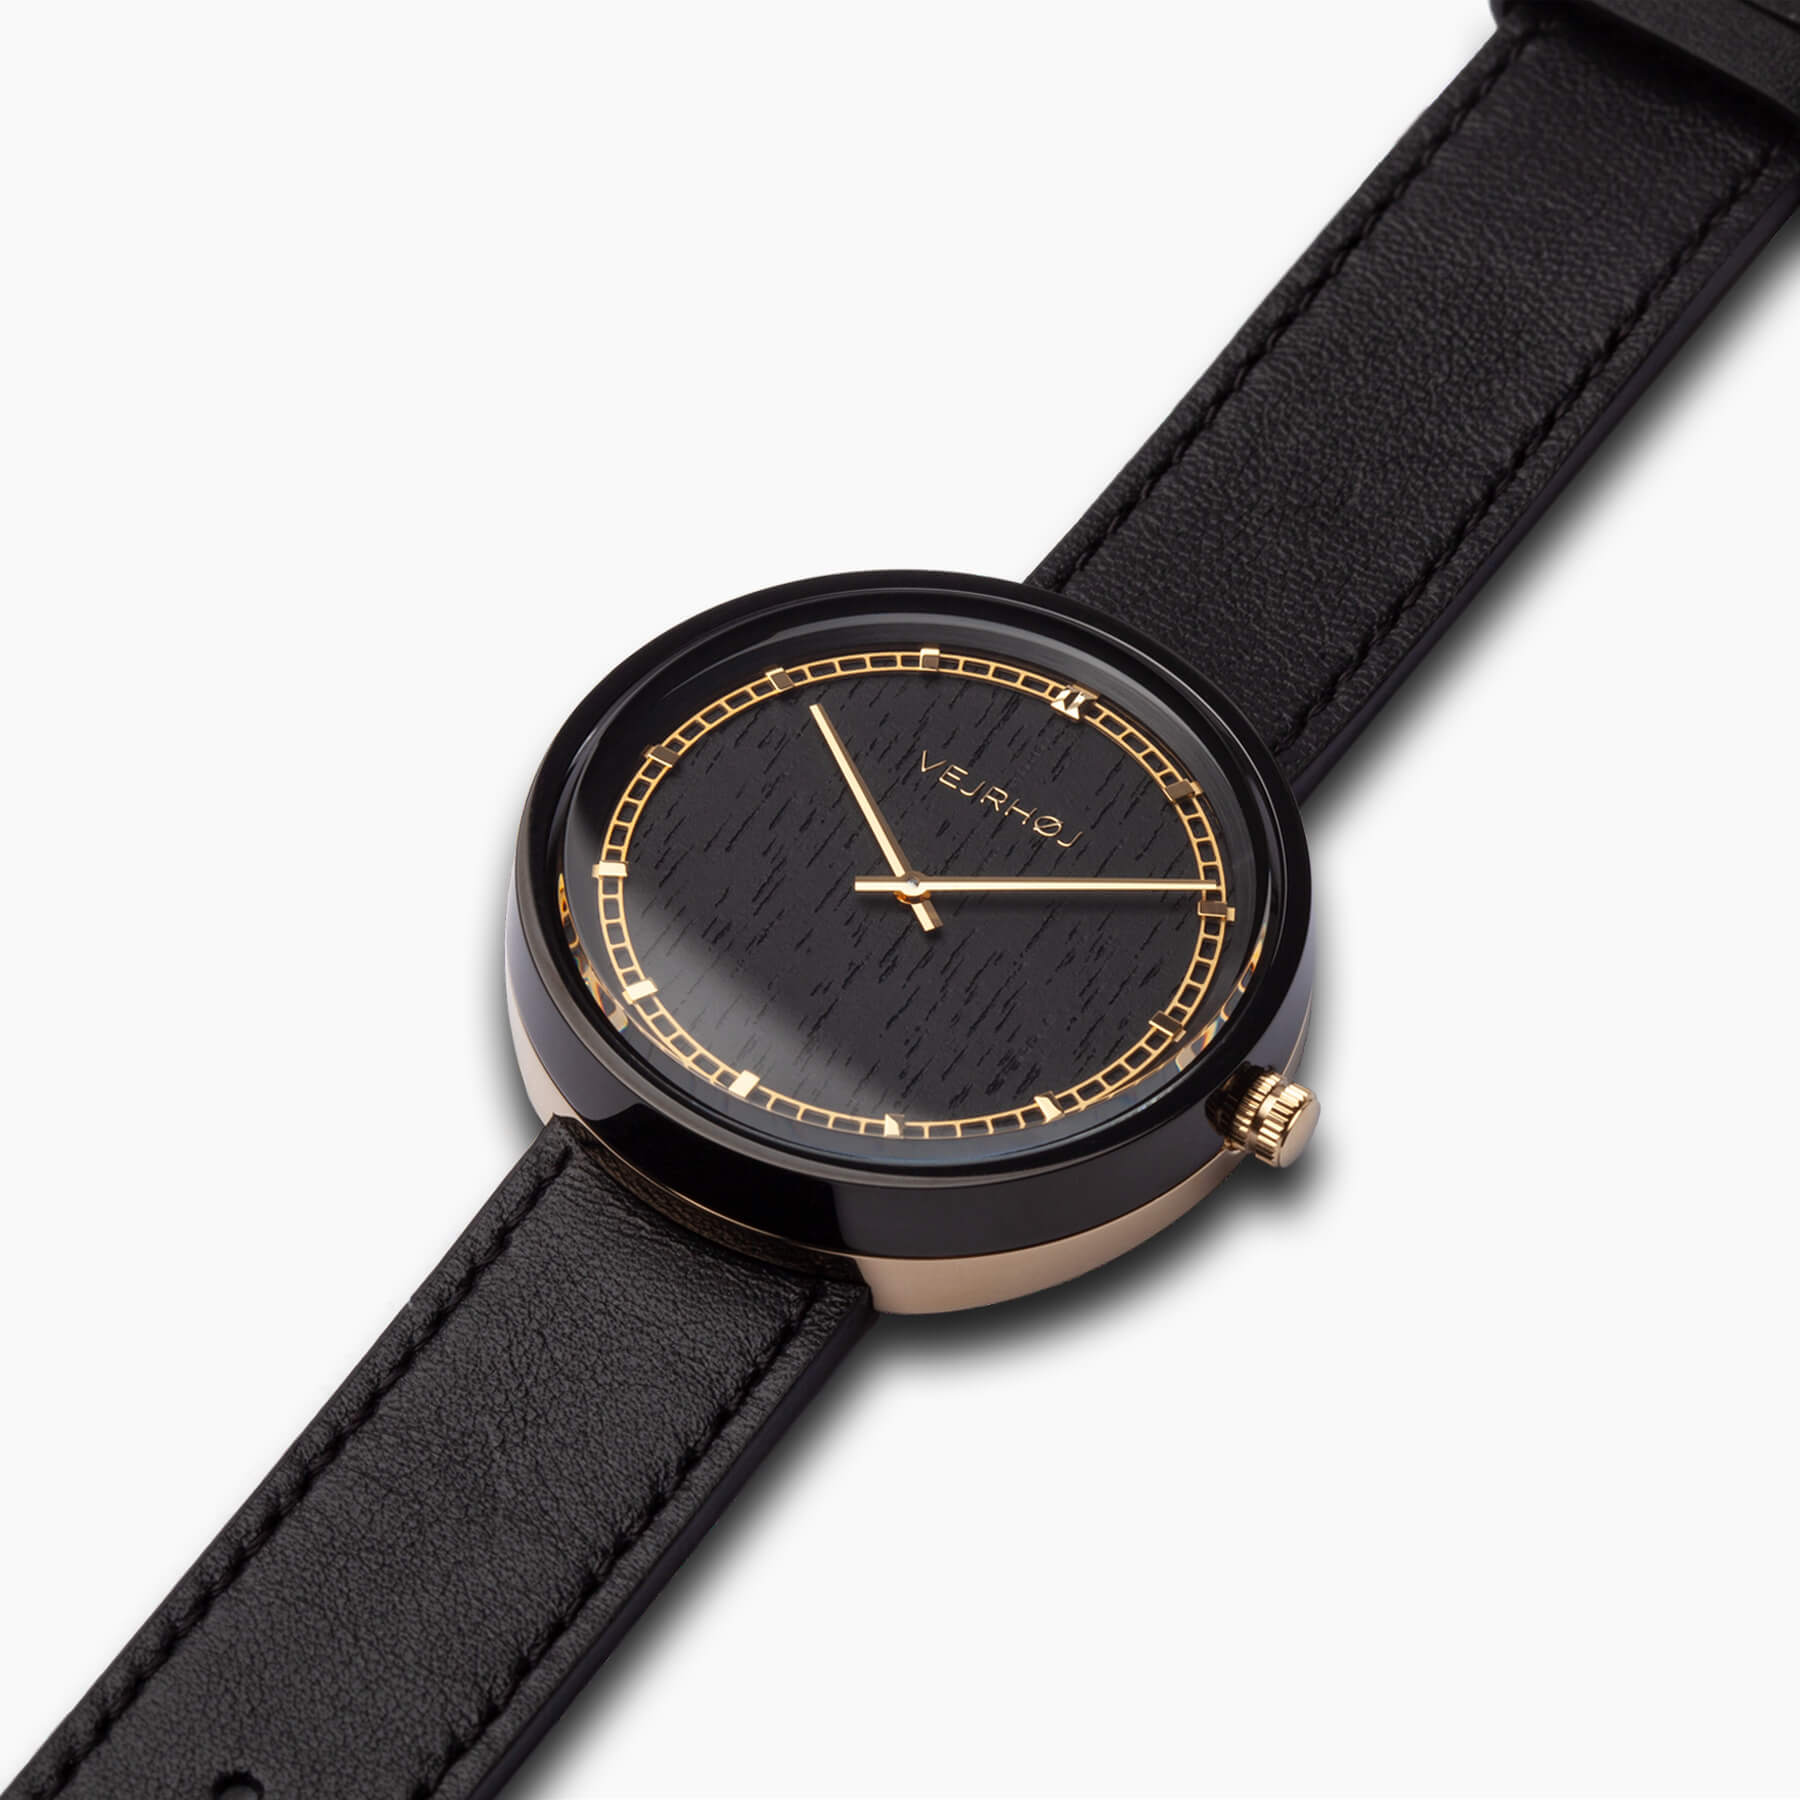  ヴェアホイの黒とゴールドのリングが輝くメンズ木製腕時計ARCH Gold